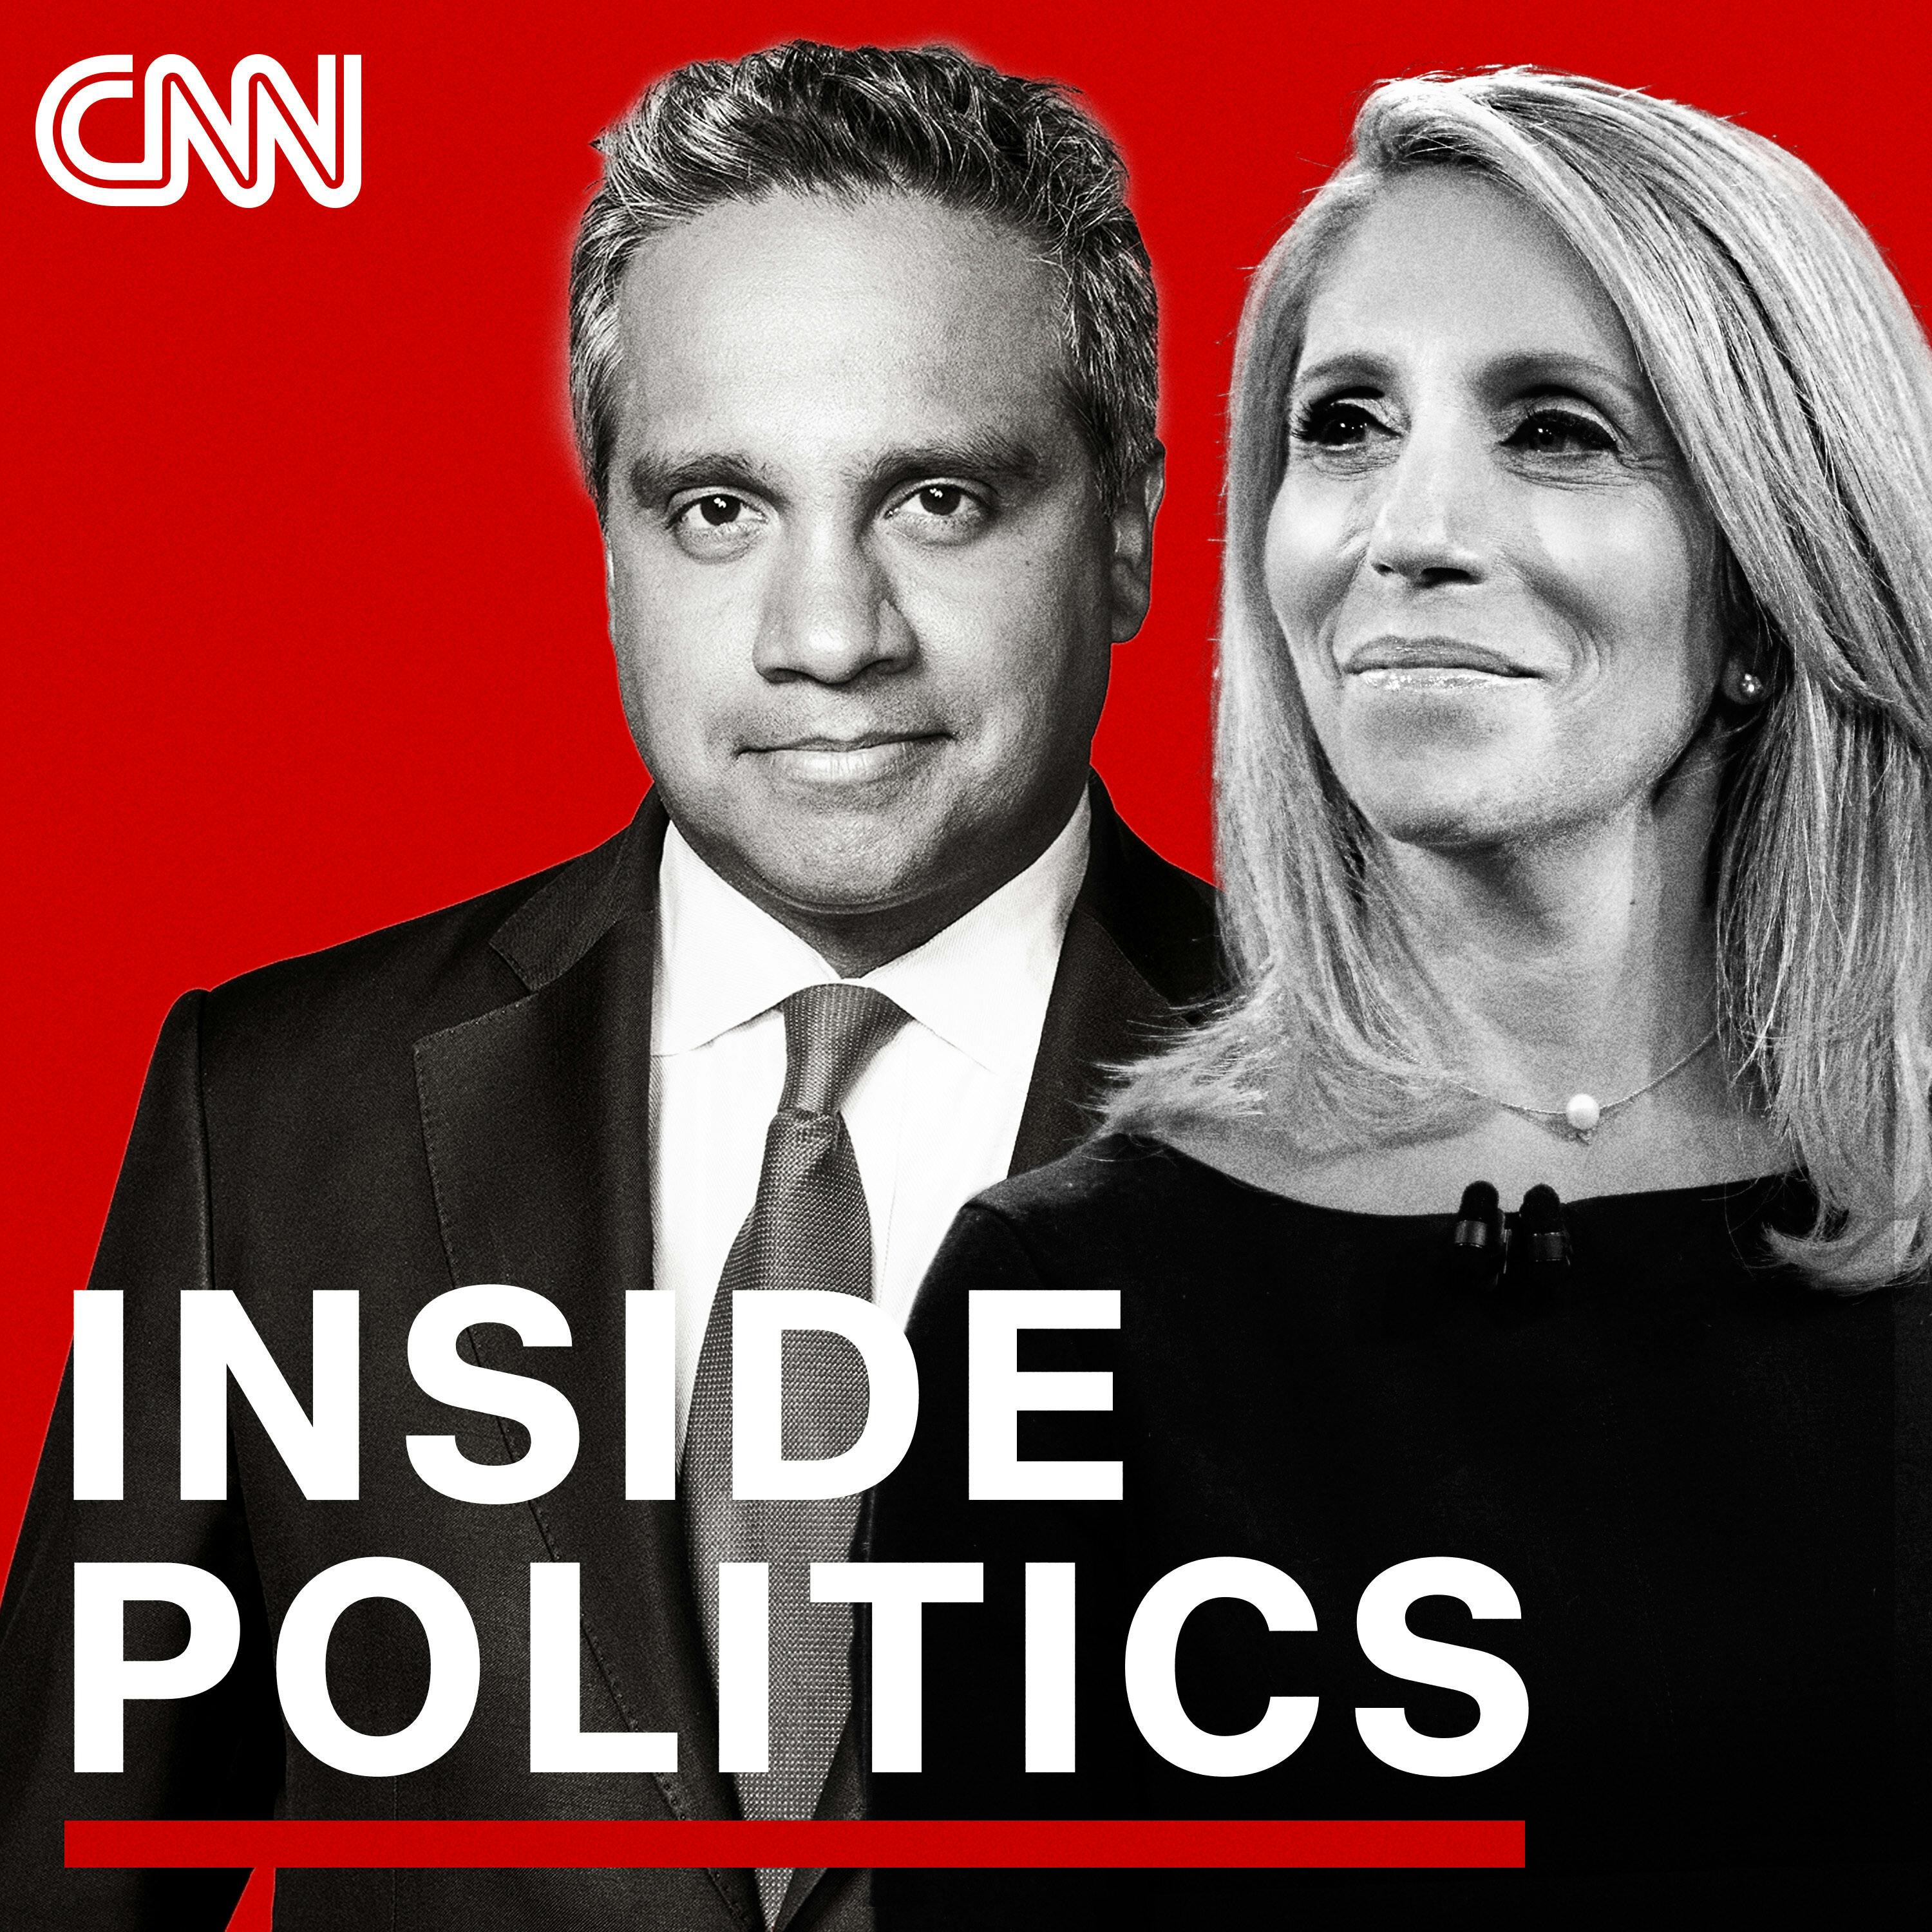 Inside Politics Podcast Update For Tuesday, September 28, 2021